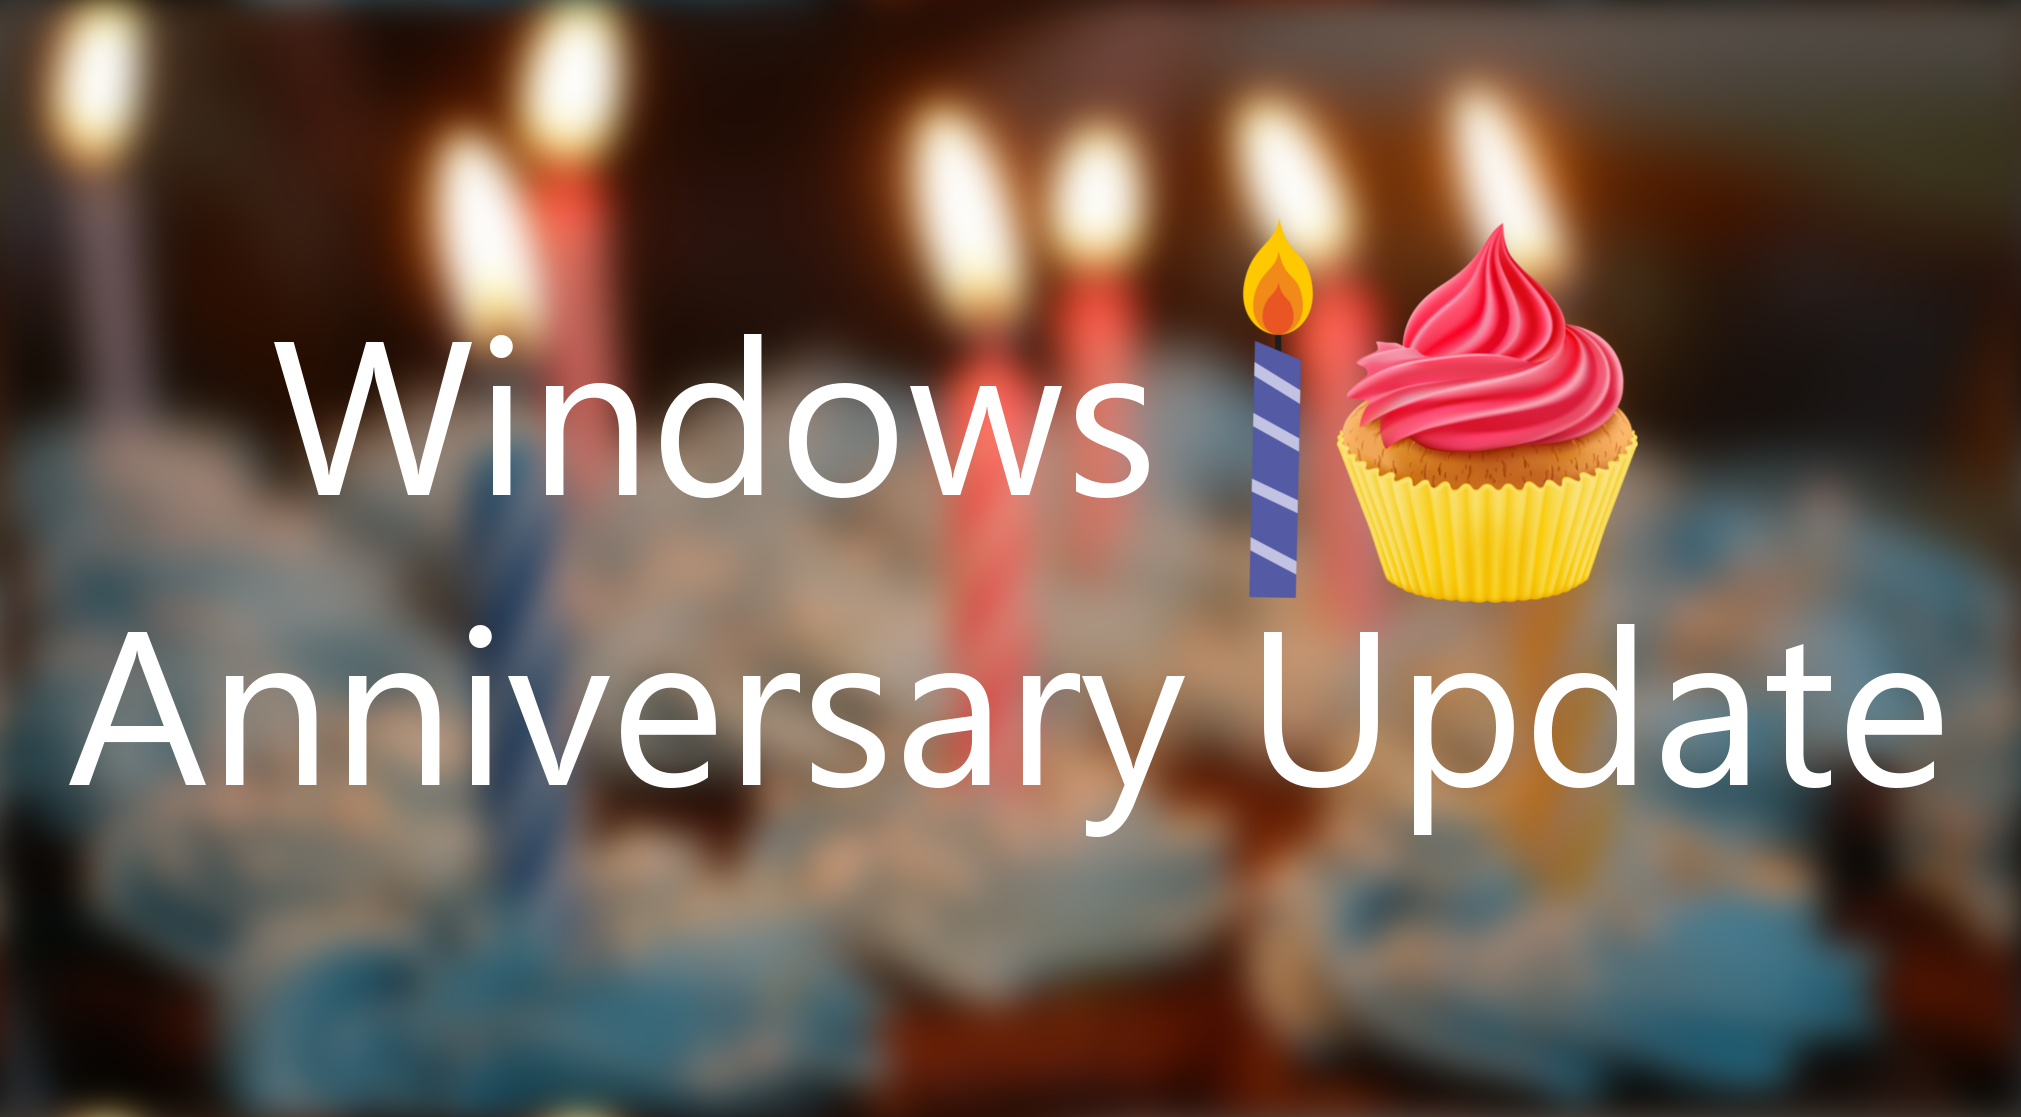 windows-10-anniversary-update